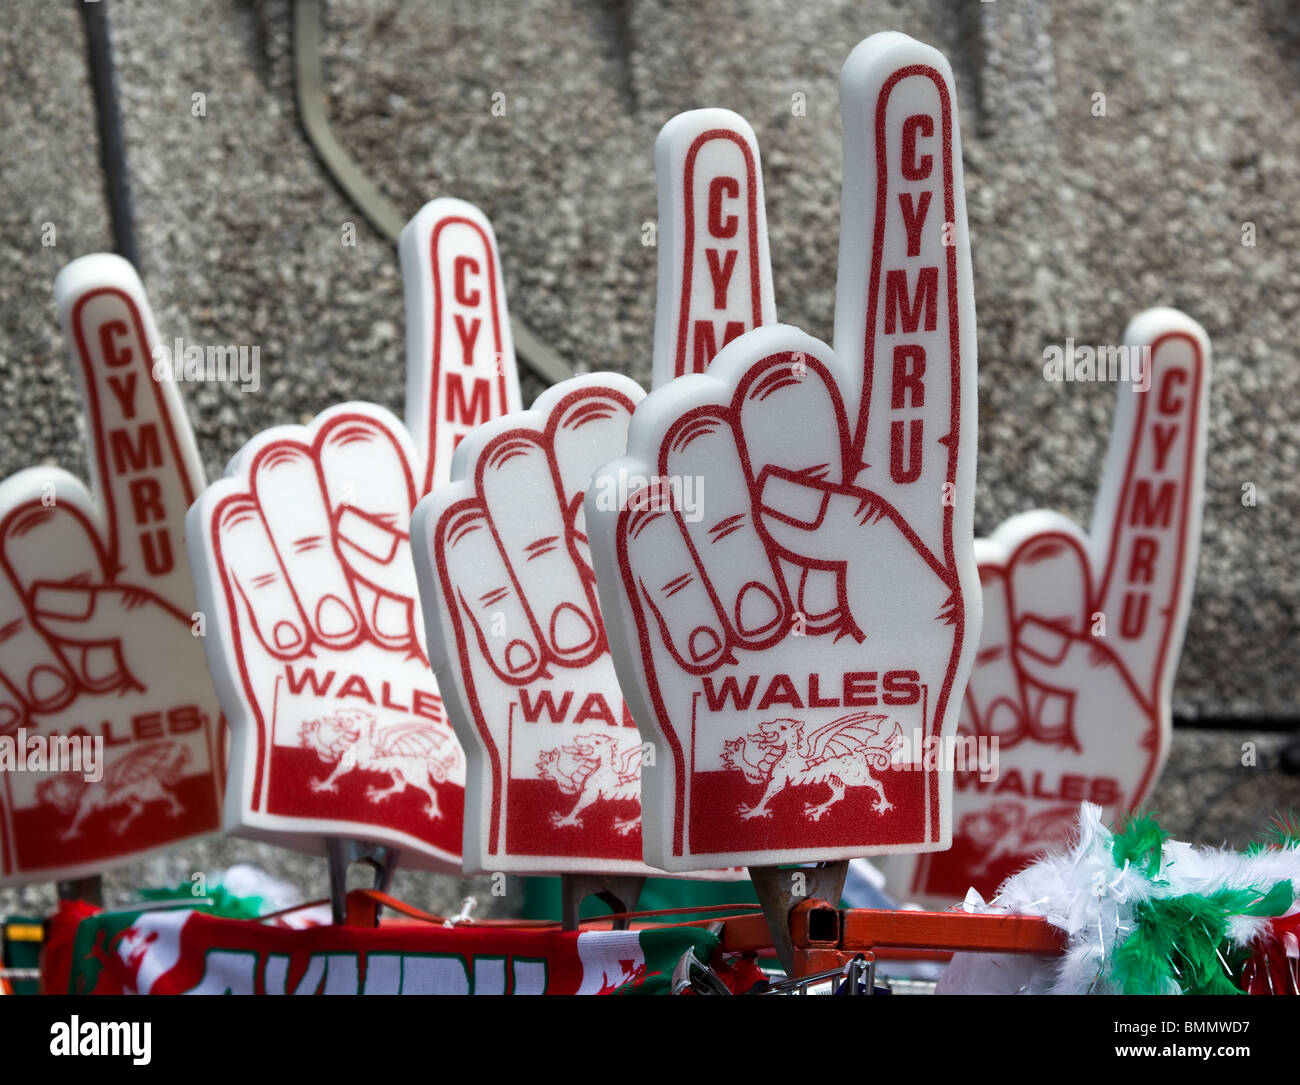 Cymru gallois ou mains en polystyrène sur la vente à l'extérieur du stade du millénaire, Cardiff, Pays de Galles du Sud Banque D'Images